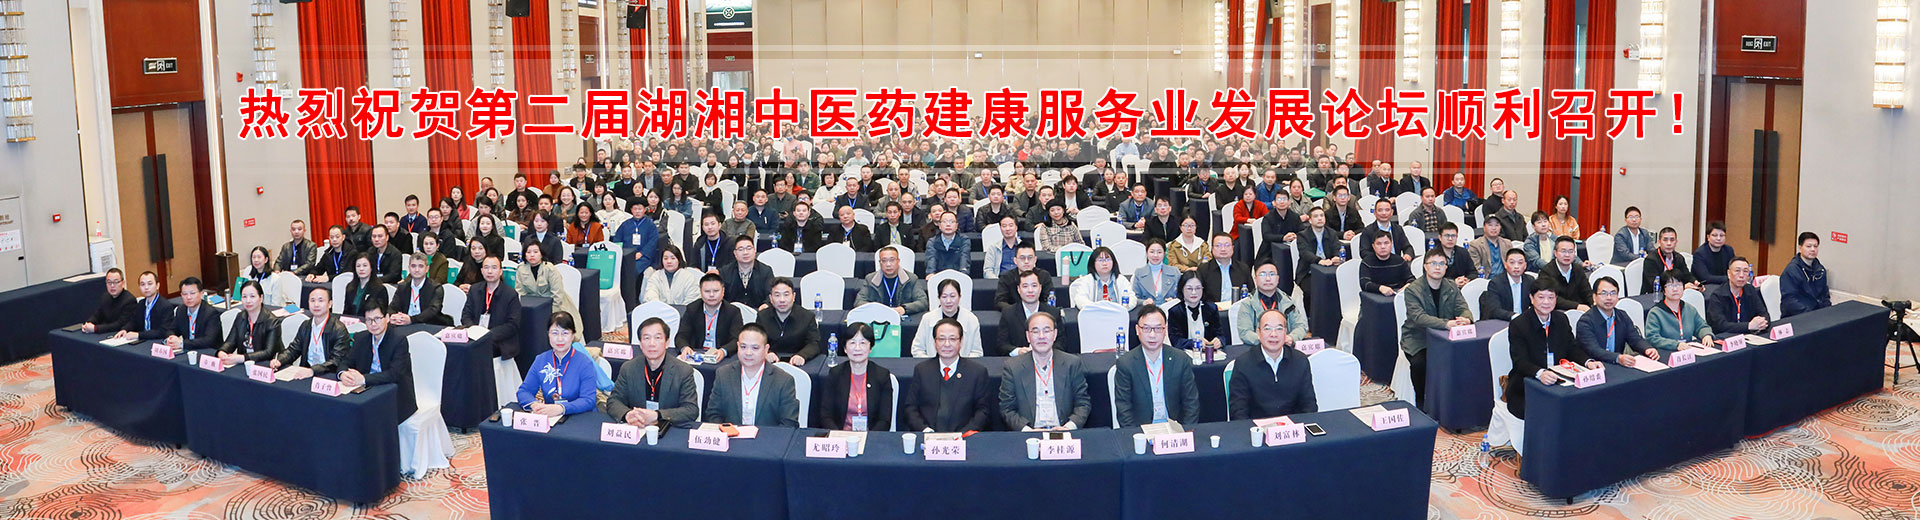 热烈祝贺第二届湖湘中医药建康服务业发展论坛顺利召开！